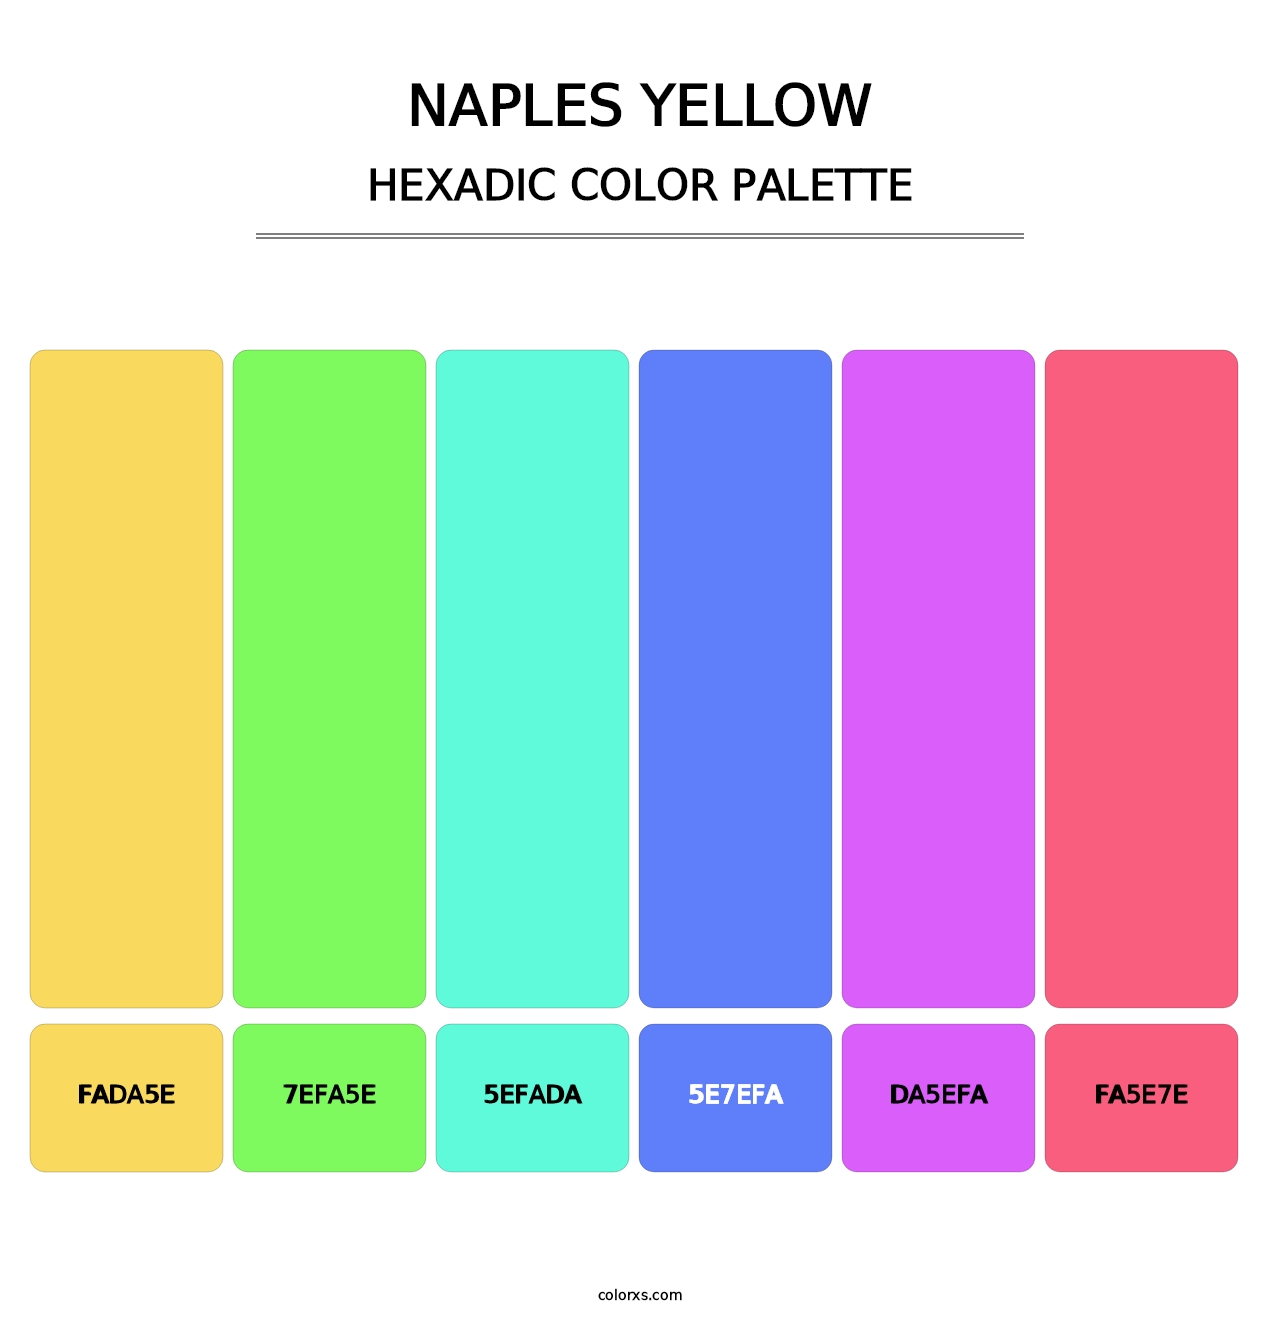 Naples Yellow - Hexadic Color Palette